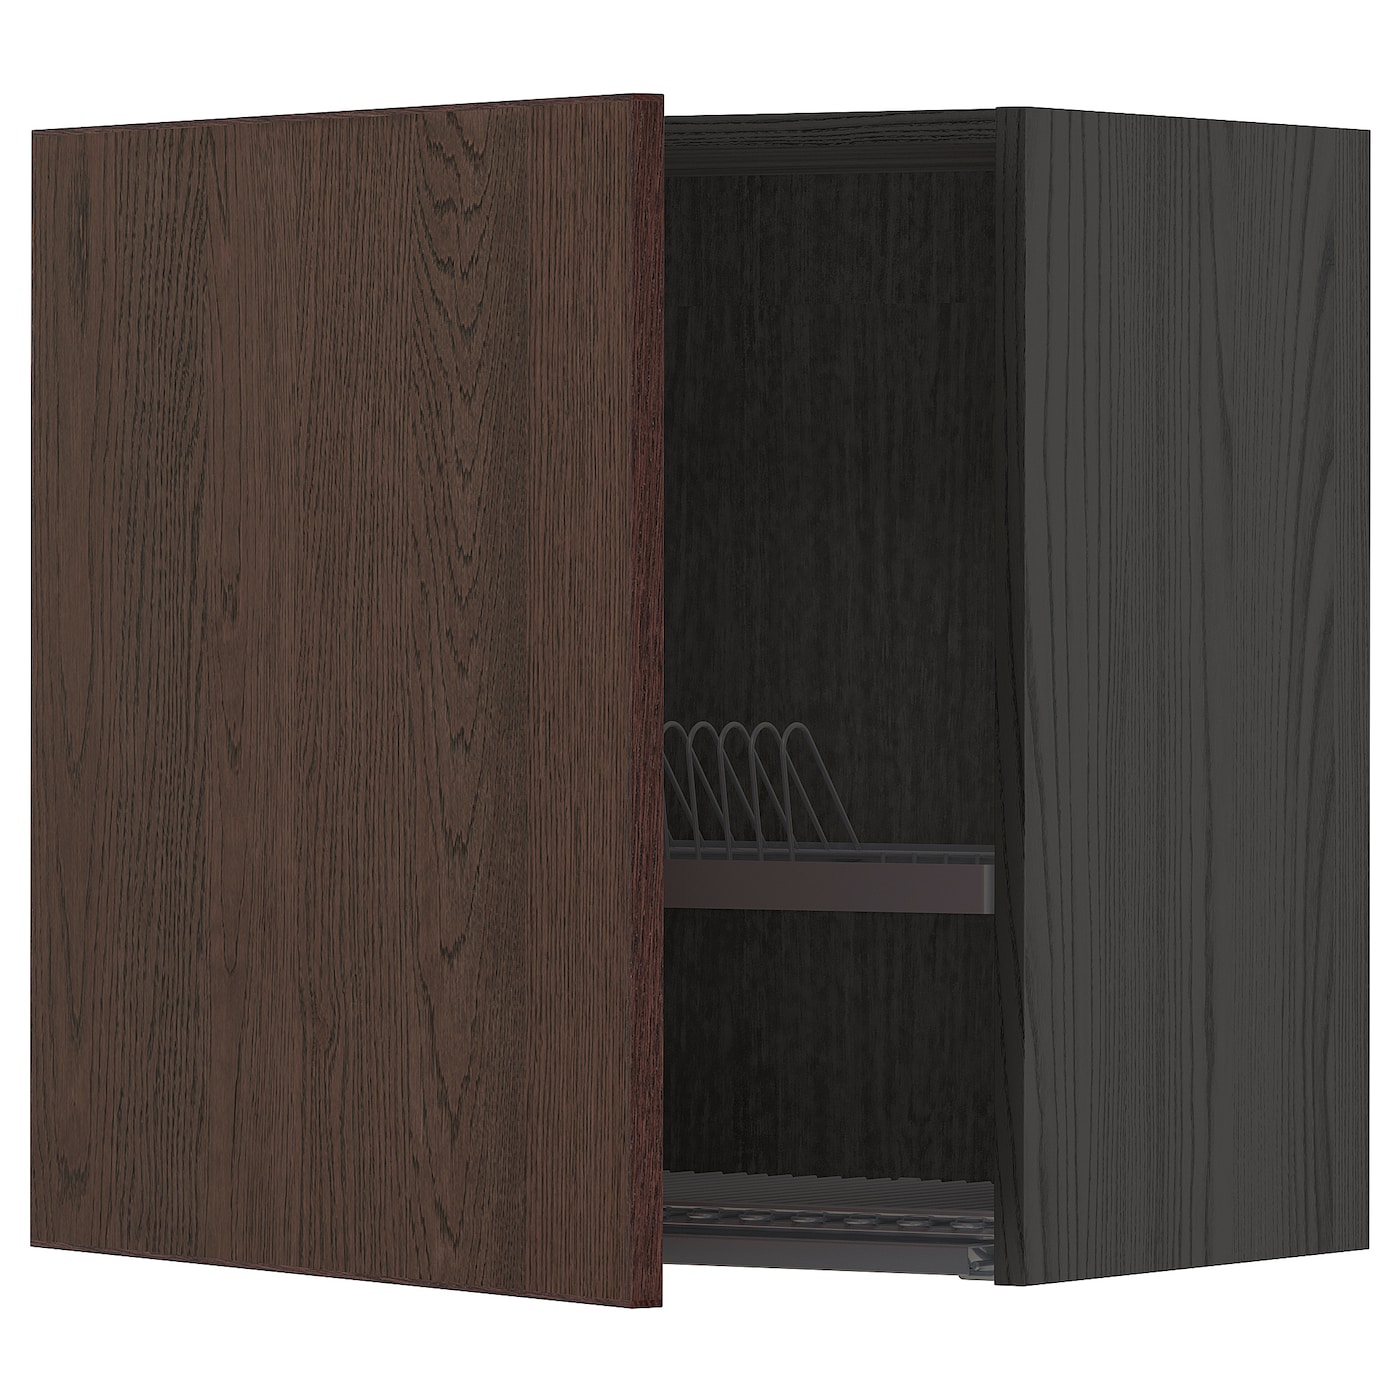 Навесной шкаф с сушилкой - METOD IKEA/ МЕТОД ИКЕА, 60х60 см, черный/коричневый